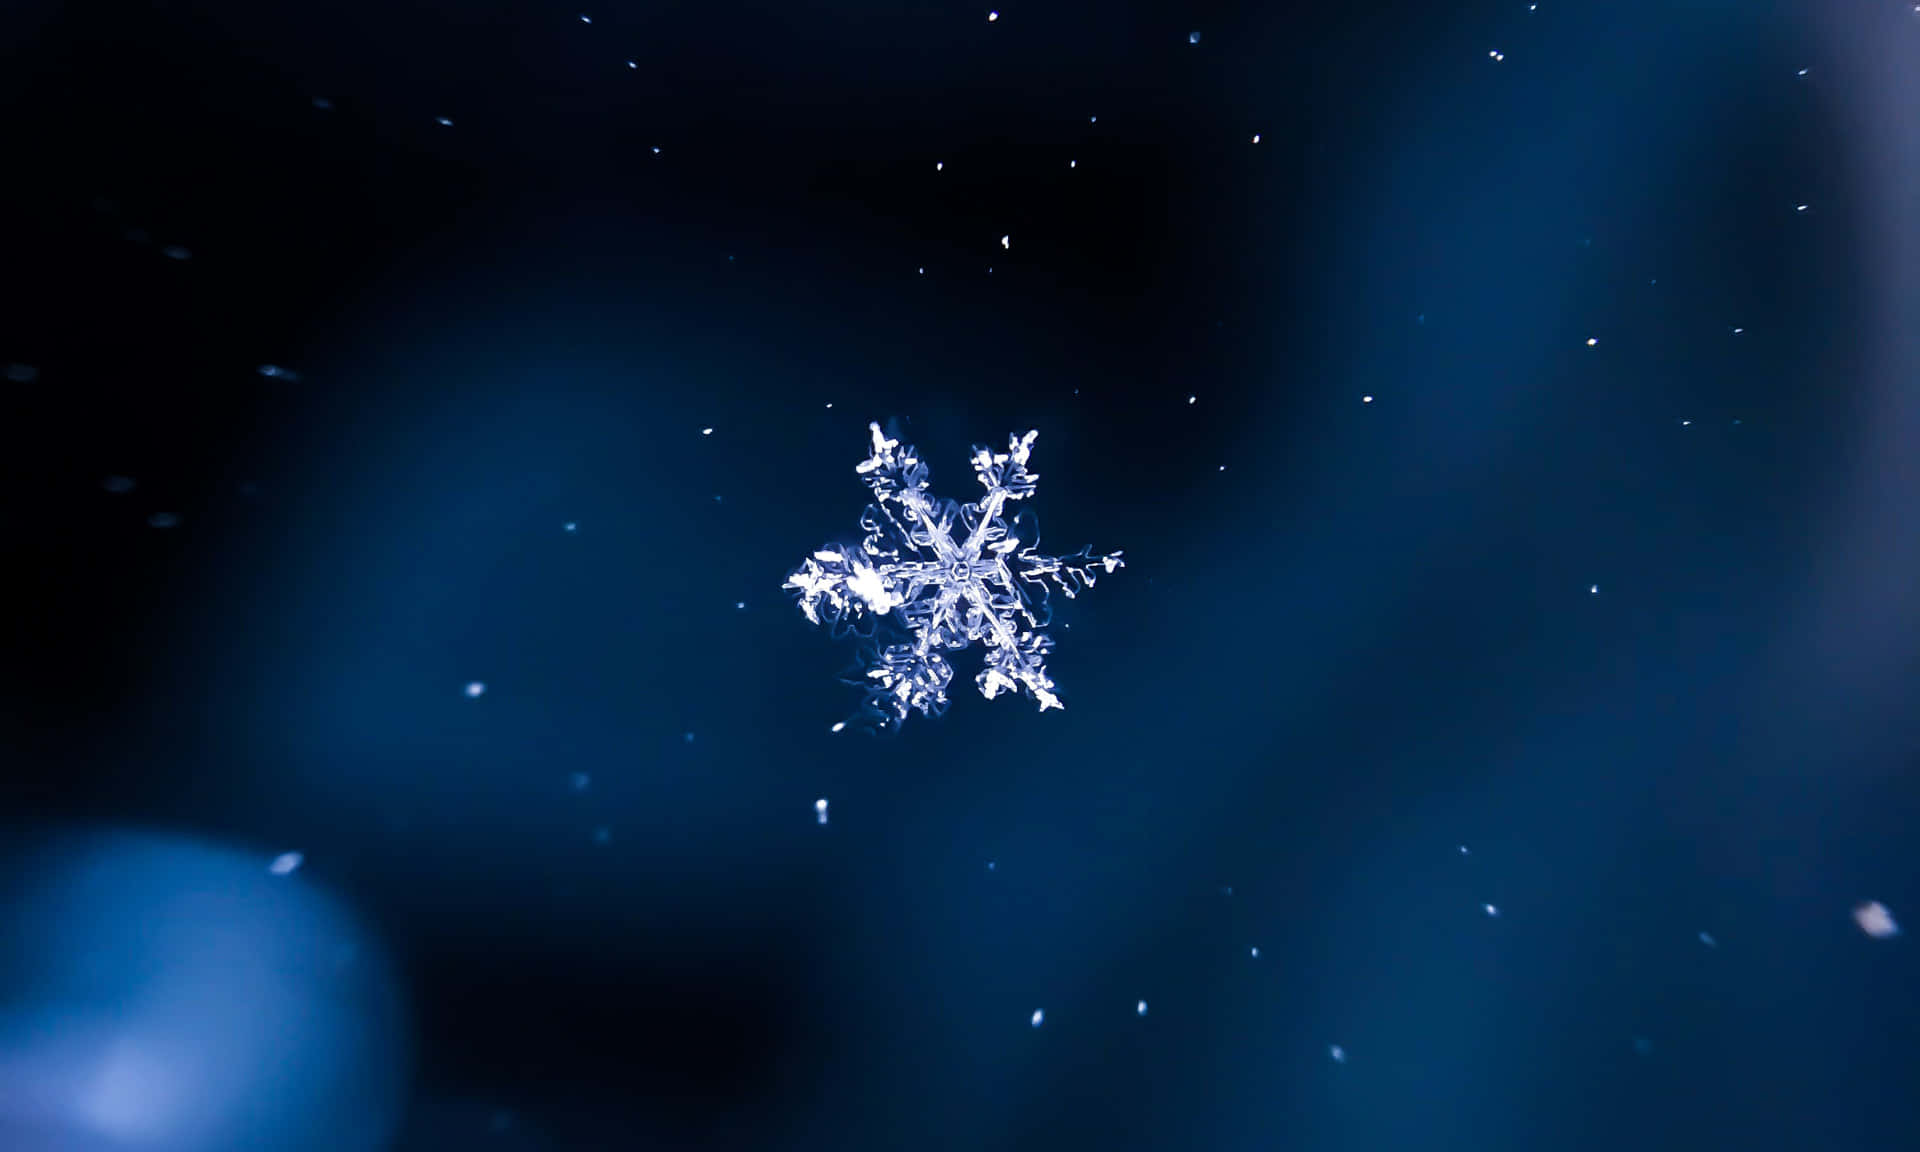 Diesesschneeflockenbild Zeigt Die Zarte Und Einzigartige Schönheit Von Schneeflocken.